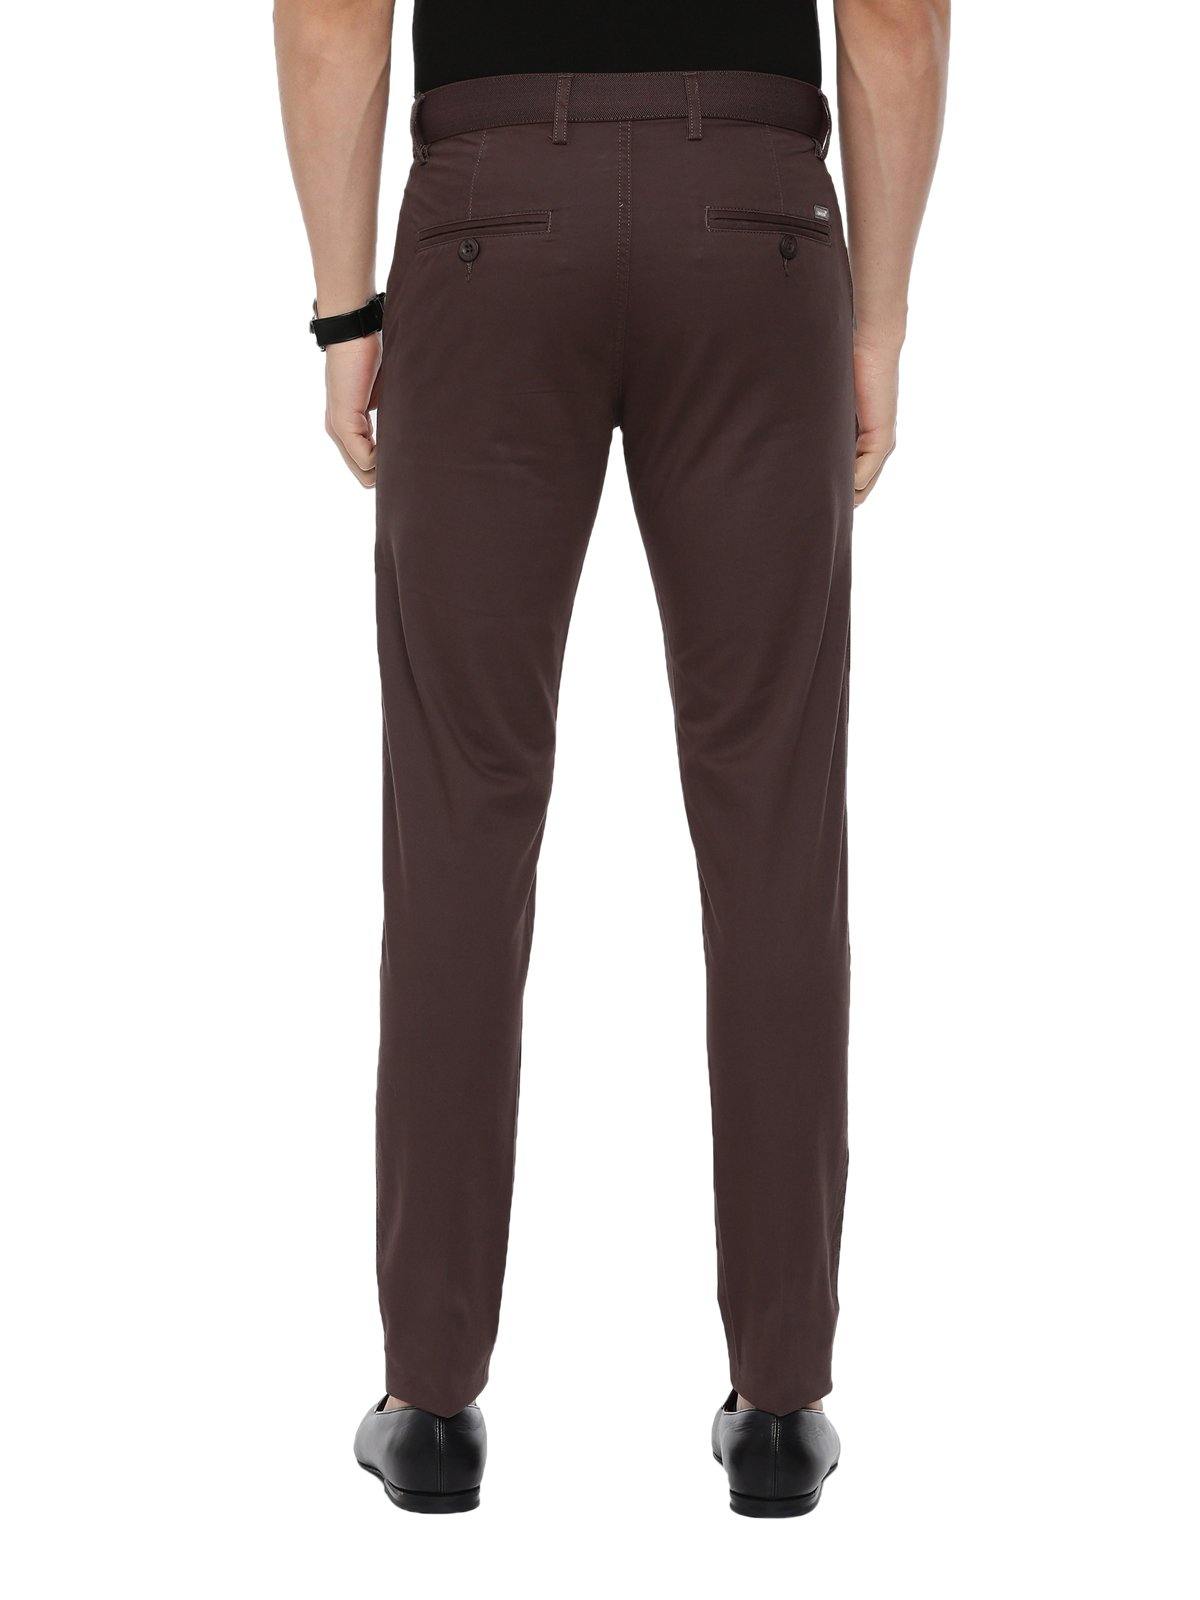 Buy K & P Men`s Regular Fit Rich Dark Coffee Brown Trouser Pant Casual &  Formal (34) at Amazon.in